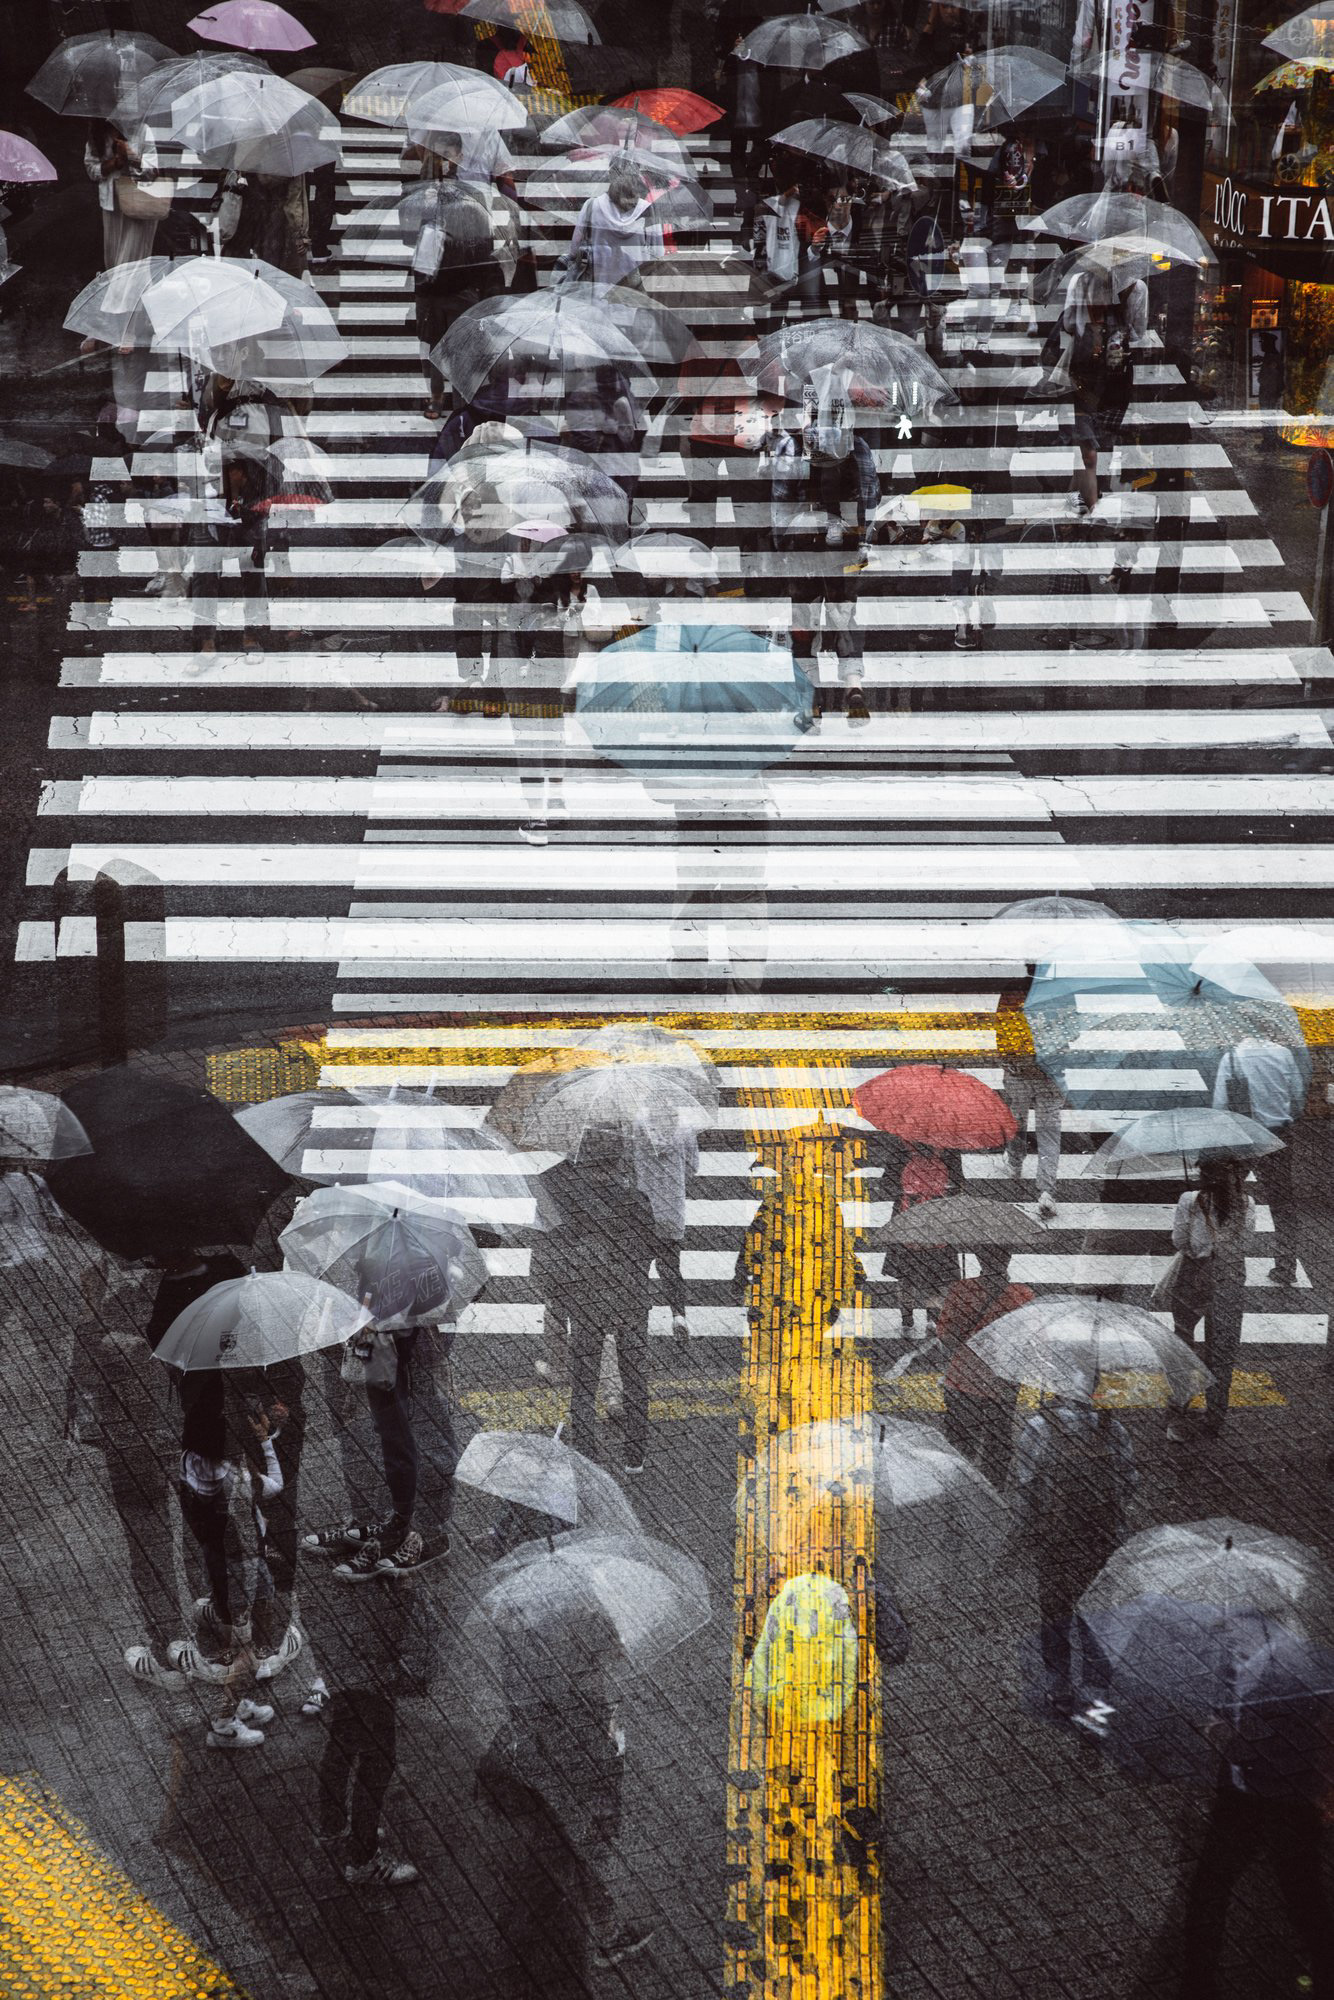 ▷ Rainy days in Tokyo V by Sven Pfrommer, 2021